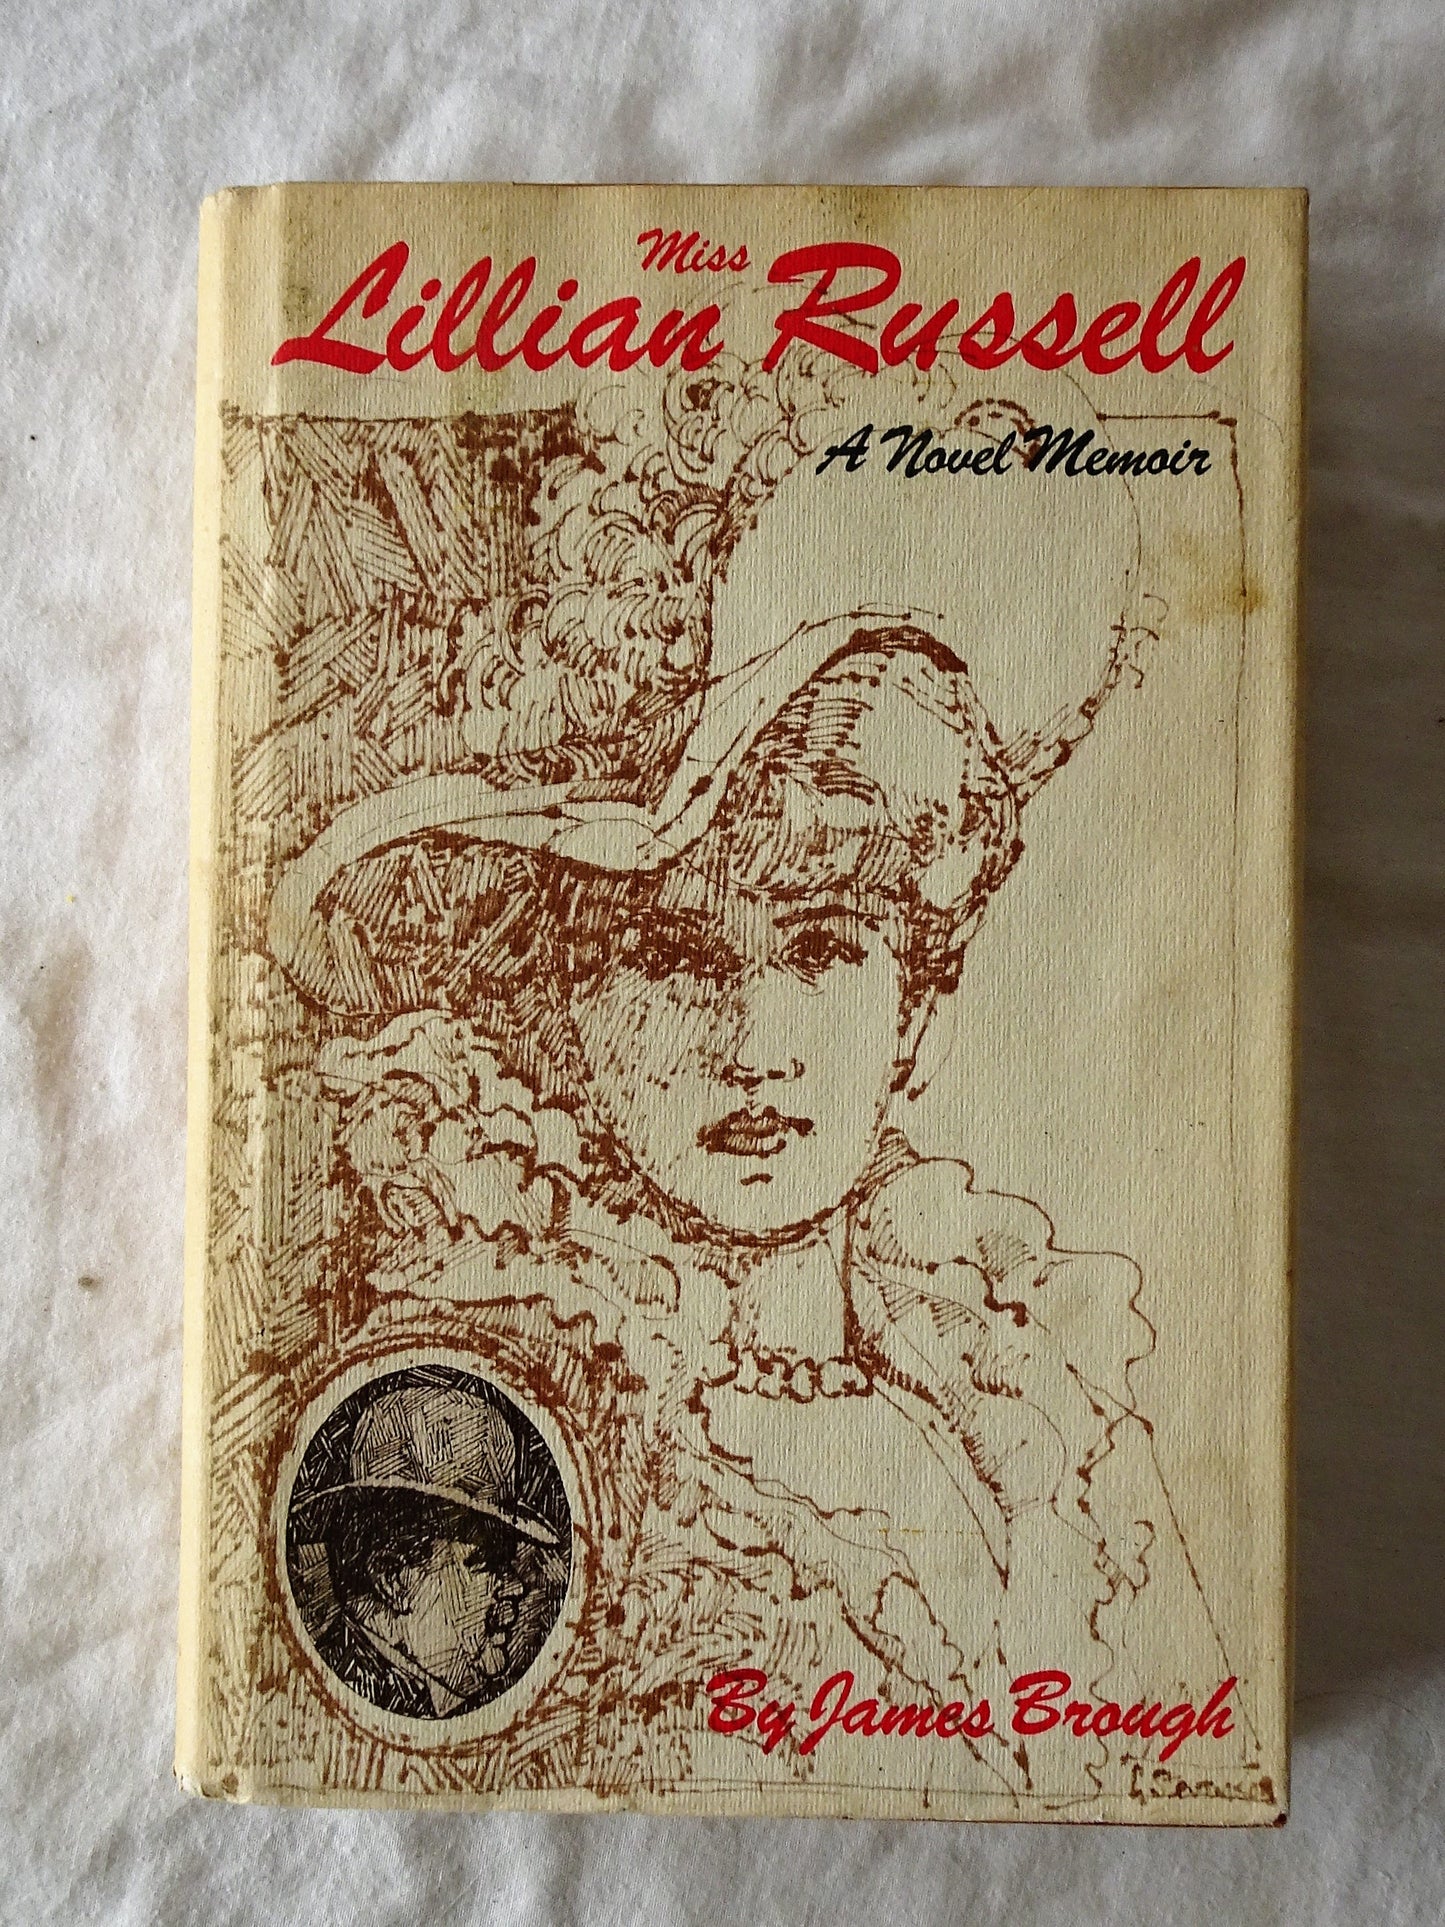 Miss Lillian Russell  A Novel Memoir  by James Brough